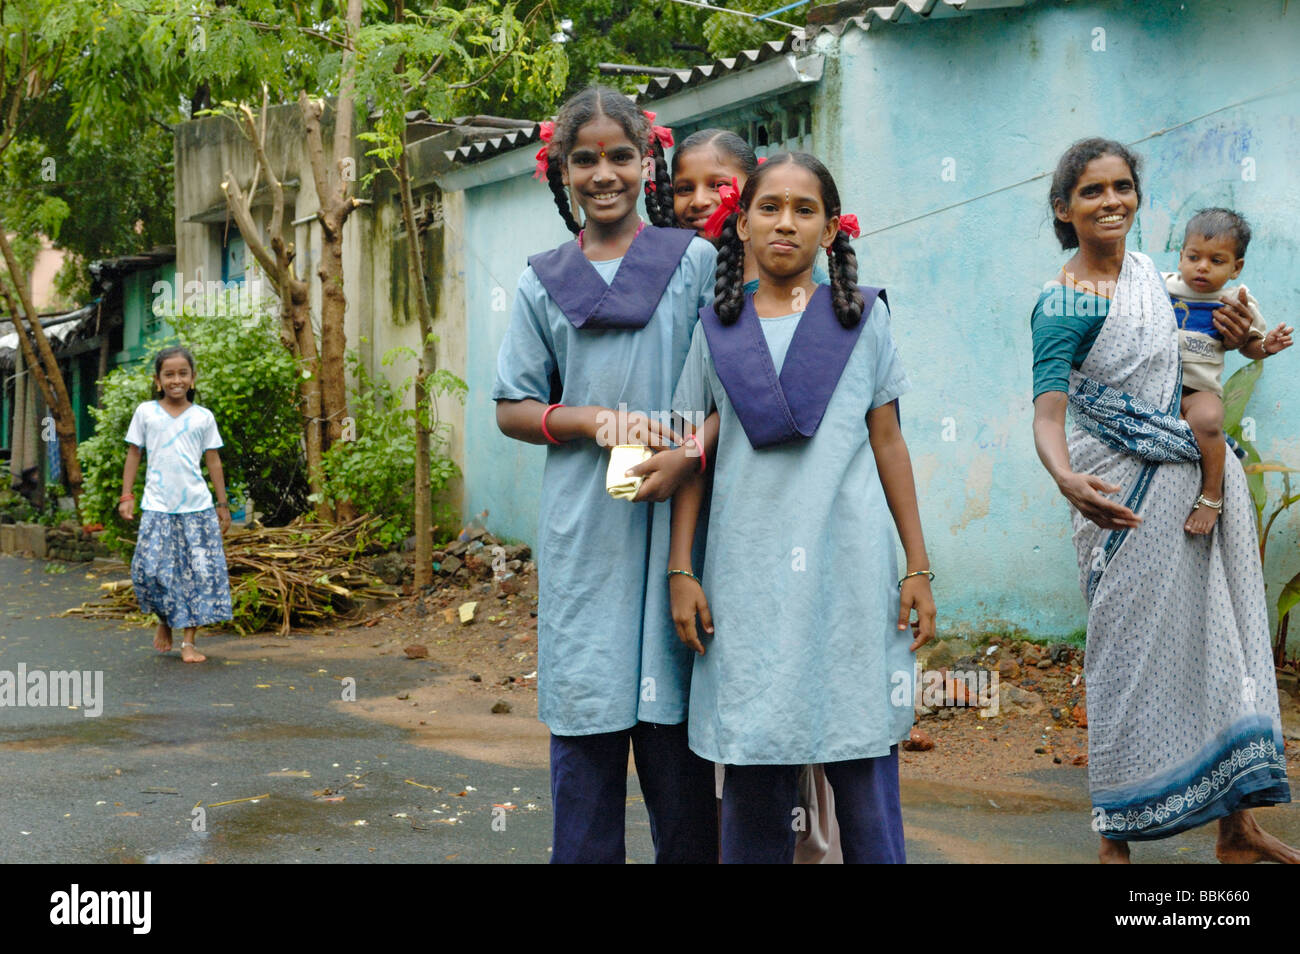 SchülerInnen in einem der Chennai viele s Slum-Gebieten; Indien, Tamil Nadu, Chennai (Madras). Keine Releases zur Verfügung. Stockfoto